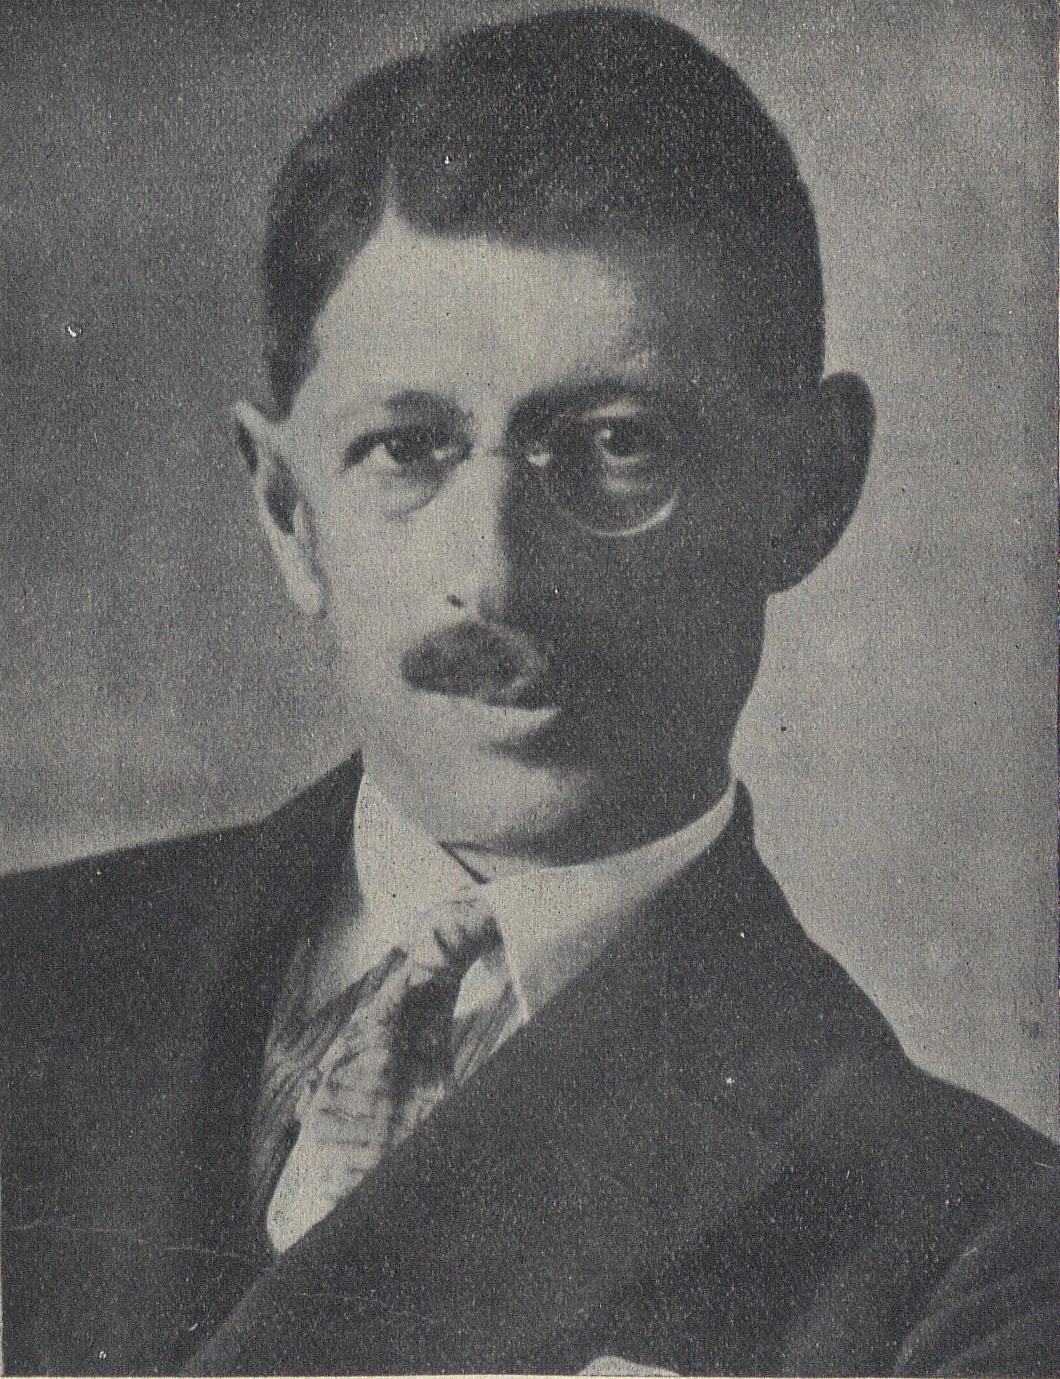 Wieloletnim kuratorem AZS we Lwowie był starożytnik, archeolog i historyk antyku prof. Edmund Bulanda (1882-1951). 